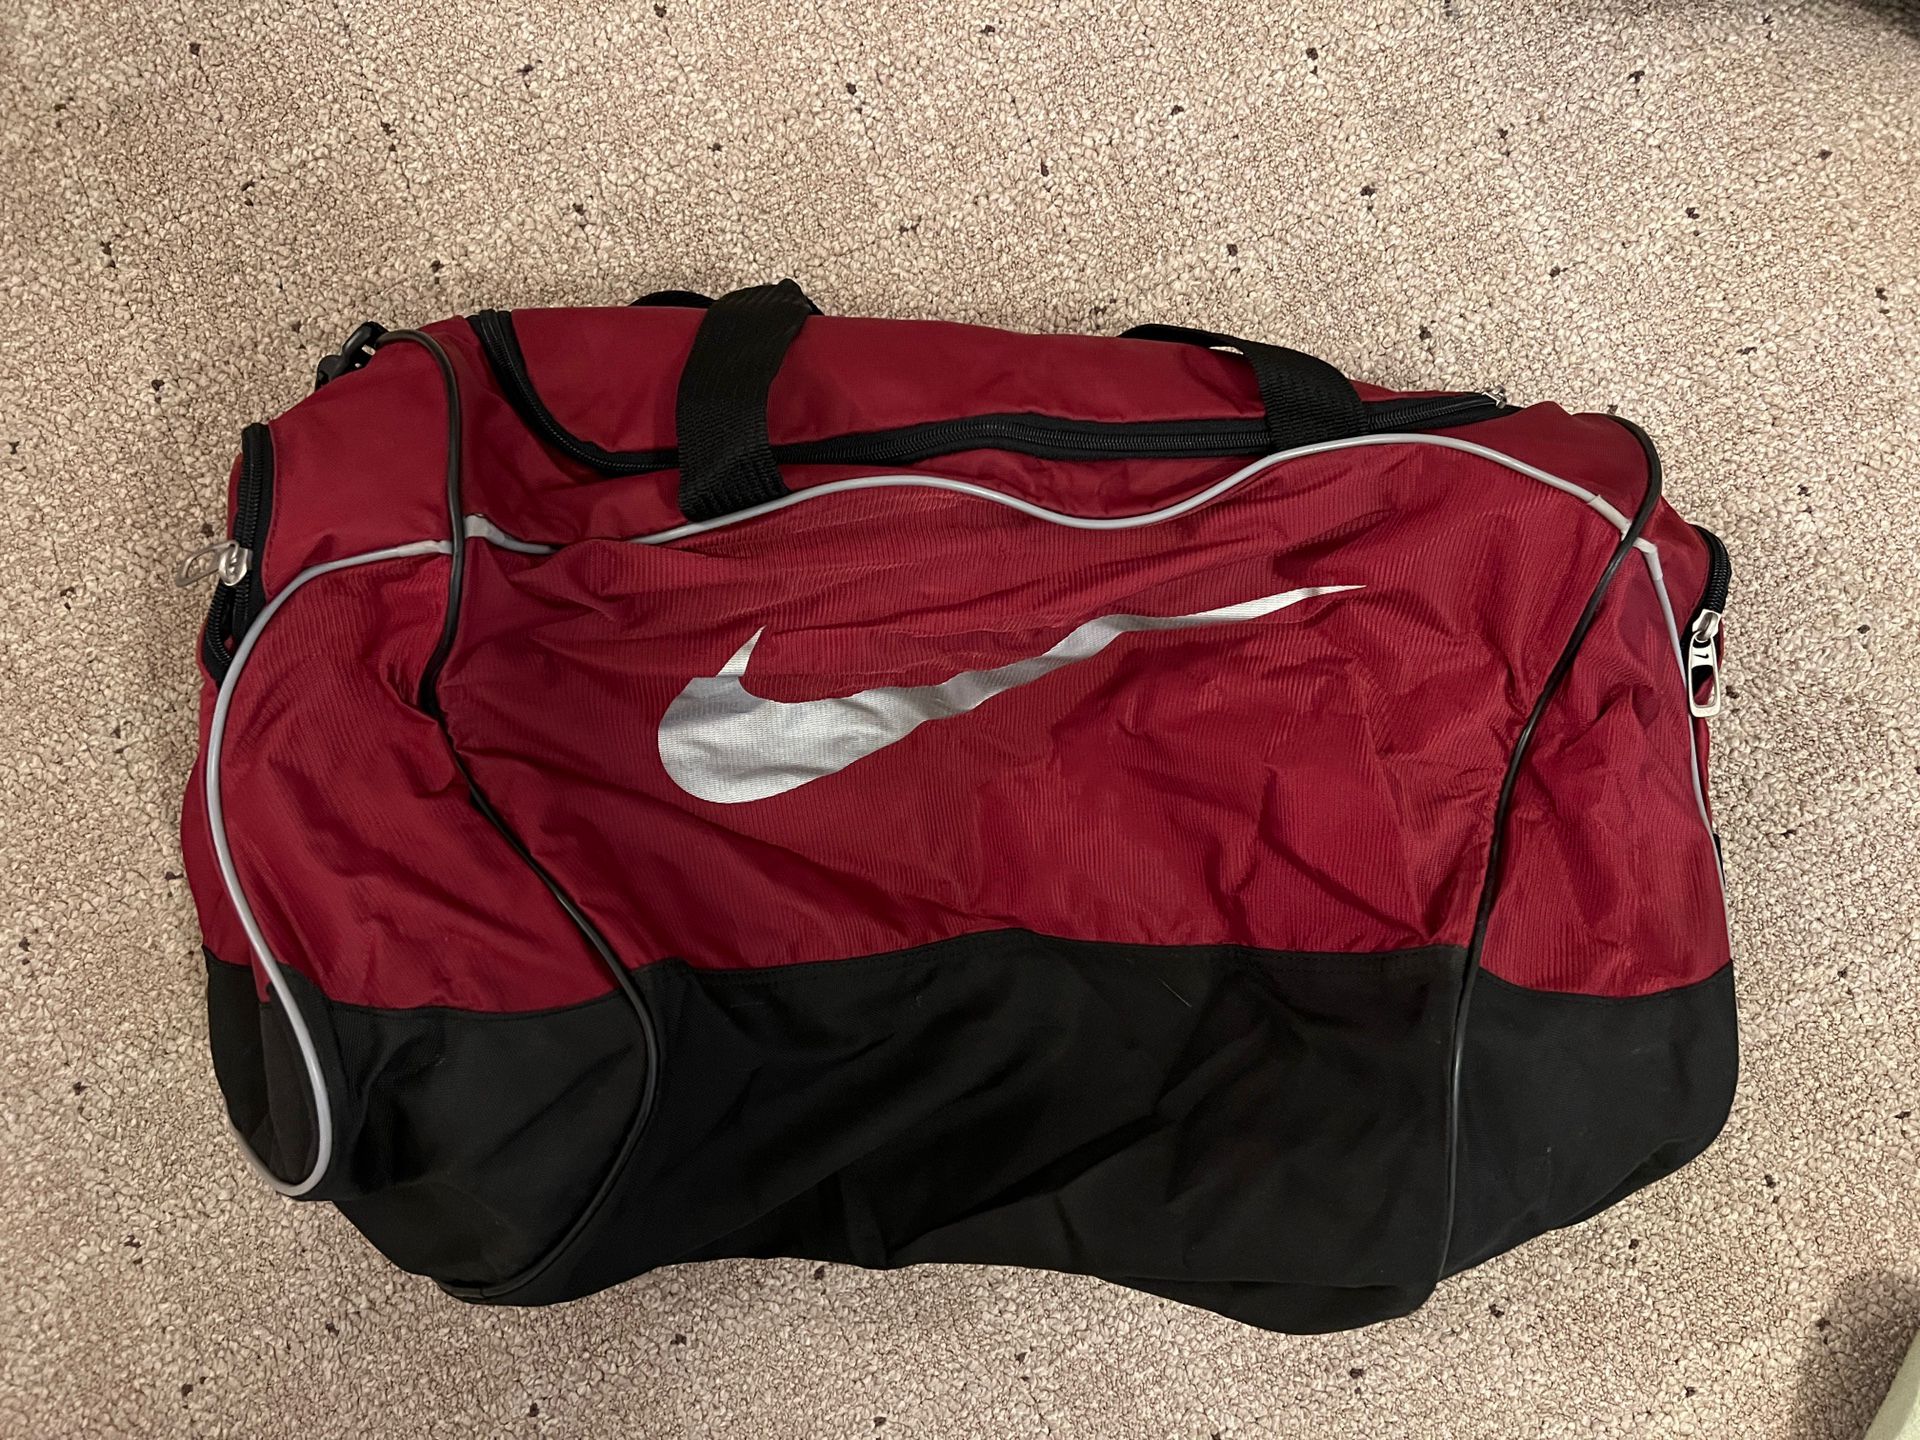 Nike Duffle Bag - Maroon 